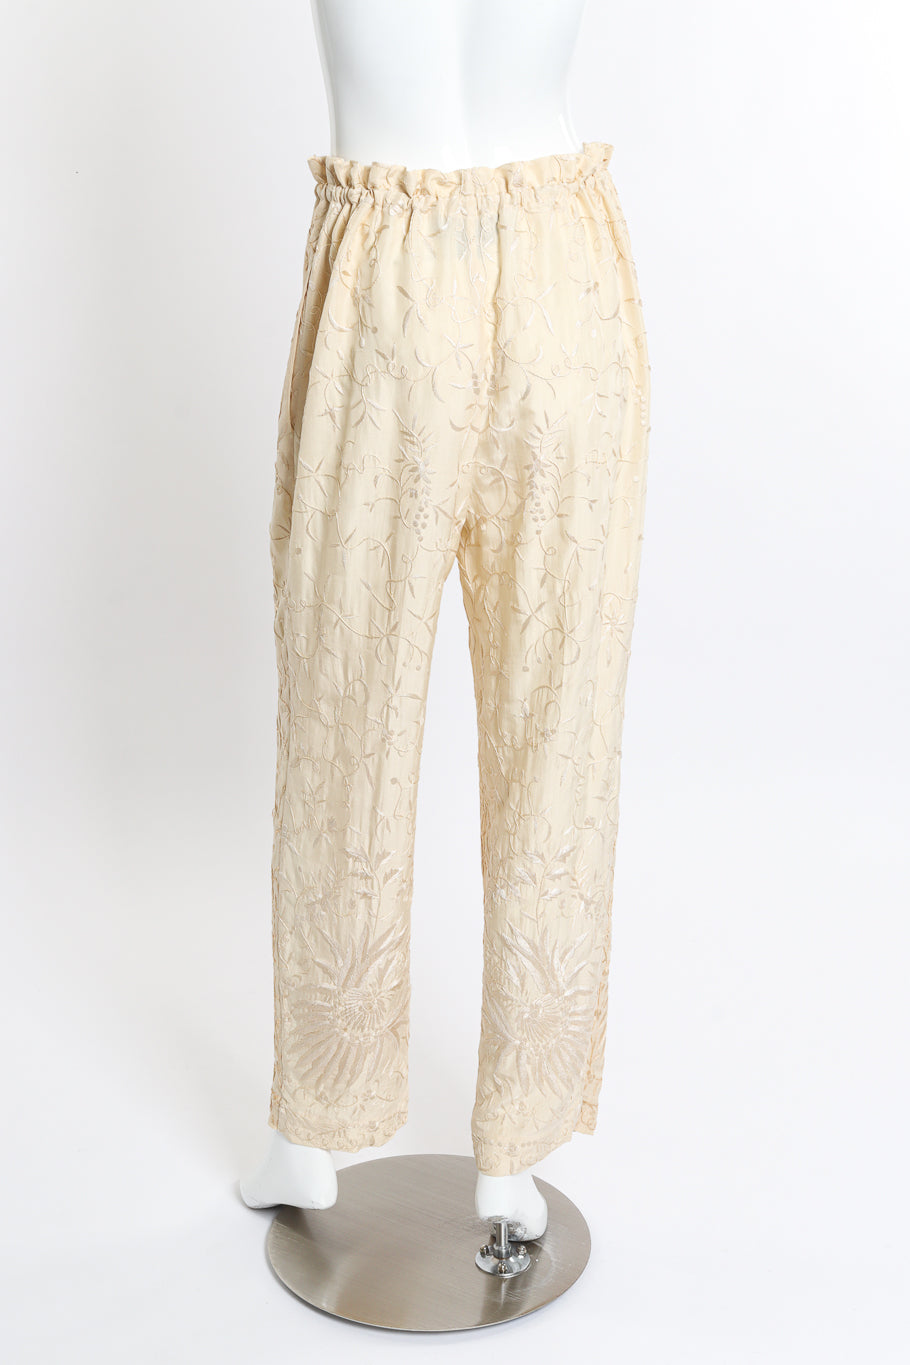 Vintage Donna Karan Embroidered Top & Pant Set pant back on mannequin @recess la